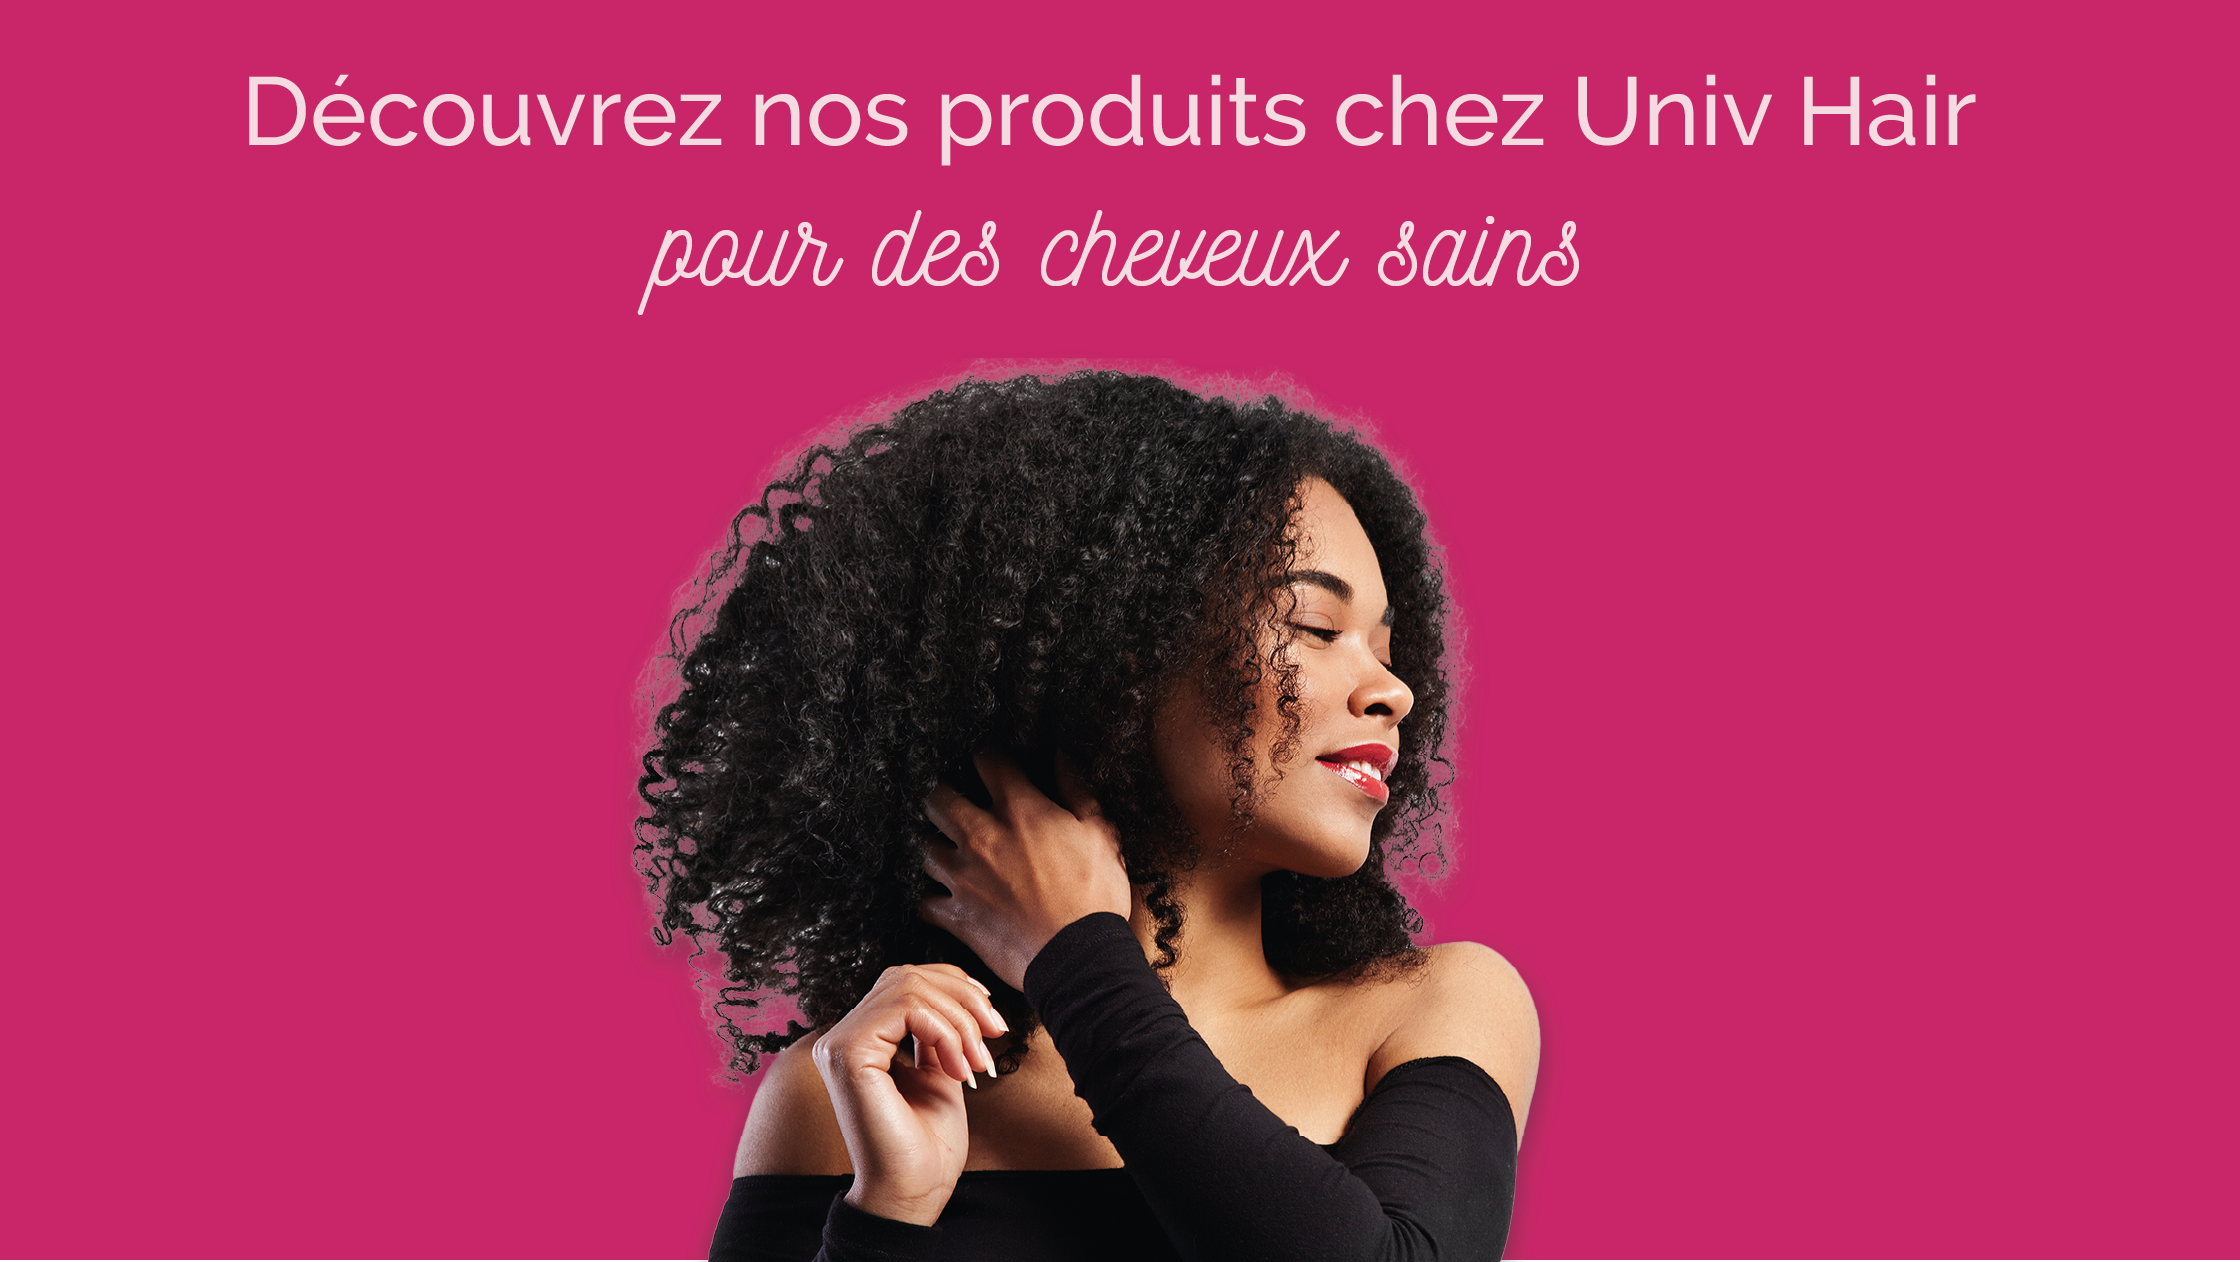 Découvrez nos produits pour des cheveux sains chez Univ Hair!